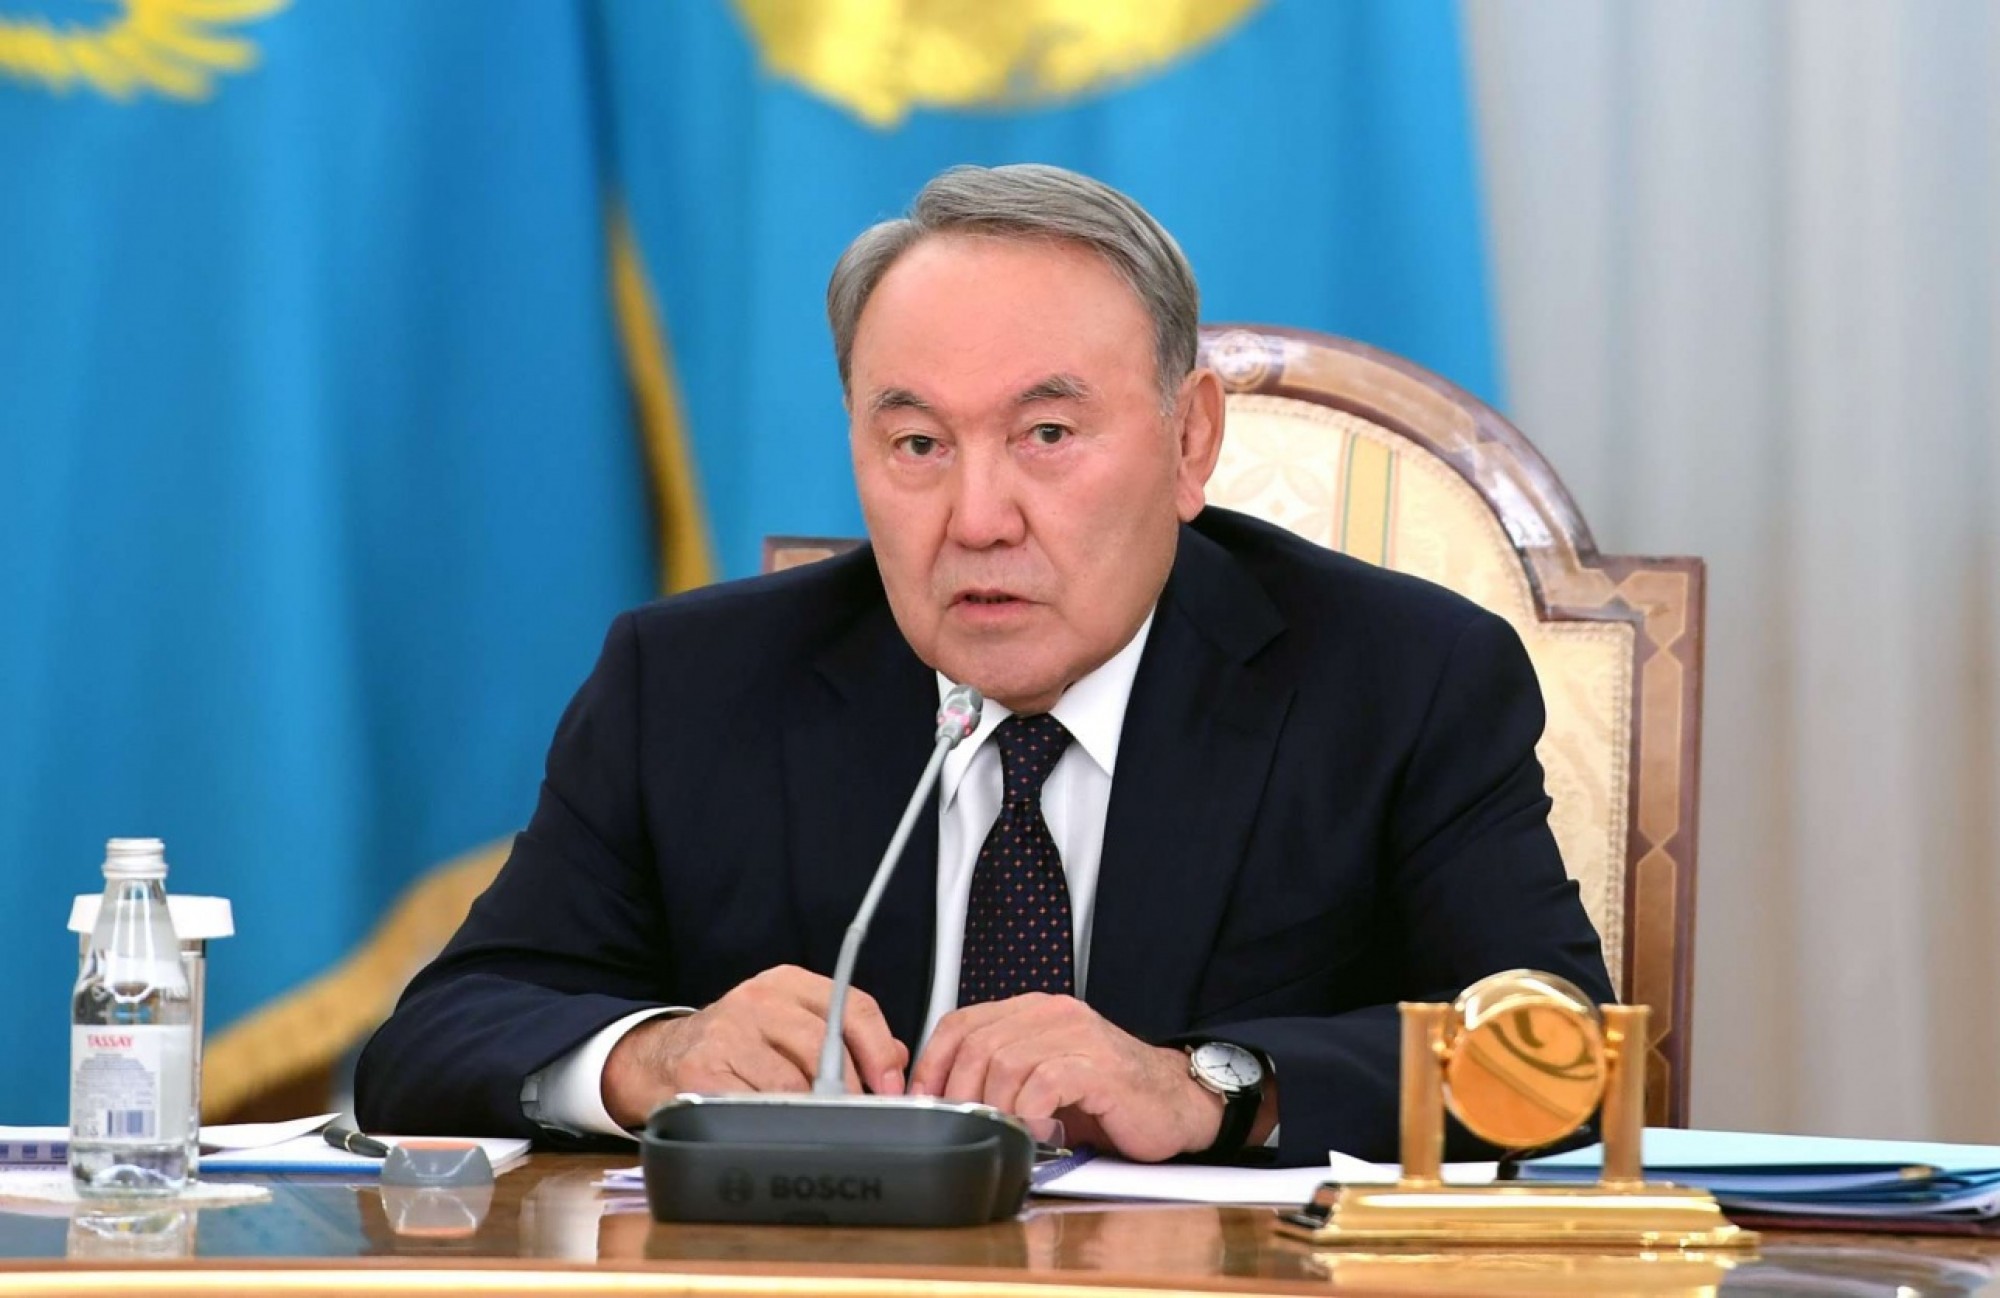 Н.Назарбаев: Предпринимательство является настоящим локомотивом и движущей силой экономики